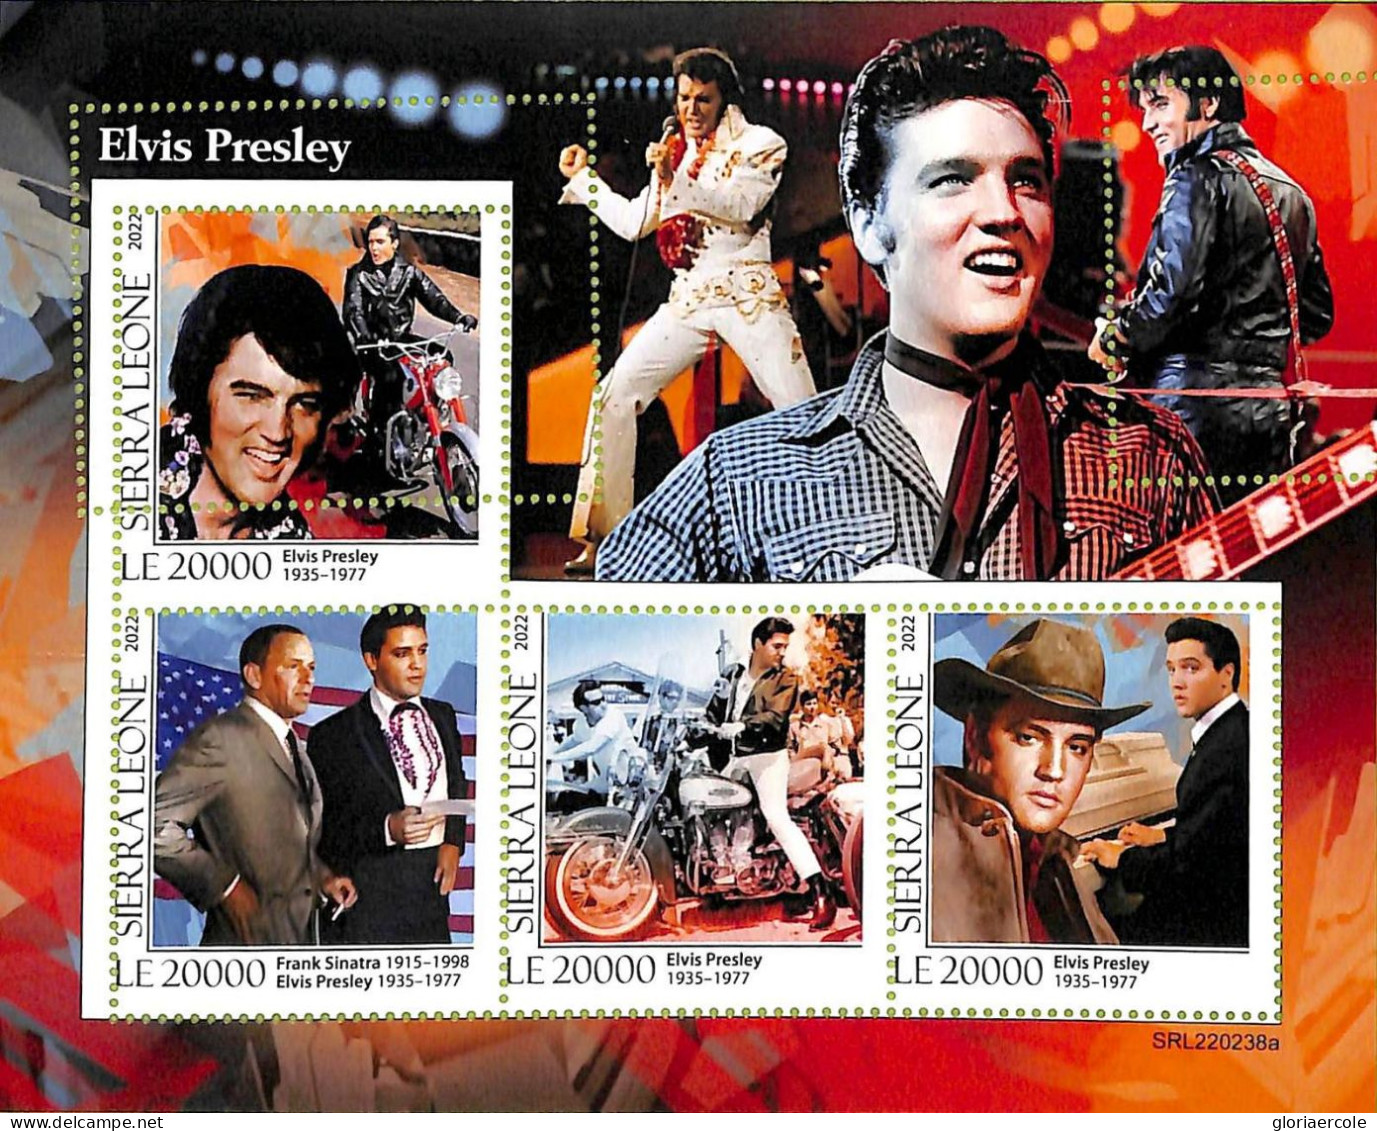 A9357 - SIERRA LEONE - ERROR MISPERF Stamp Sheet - 2022 - ELVIS PRESLEY, Music - Elvis Presley